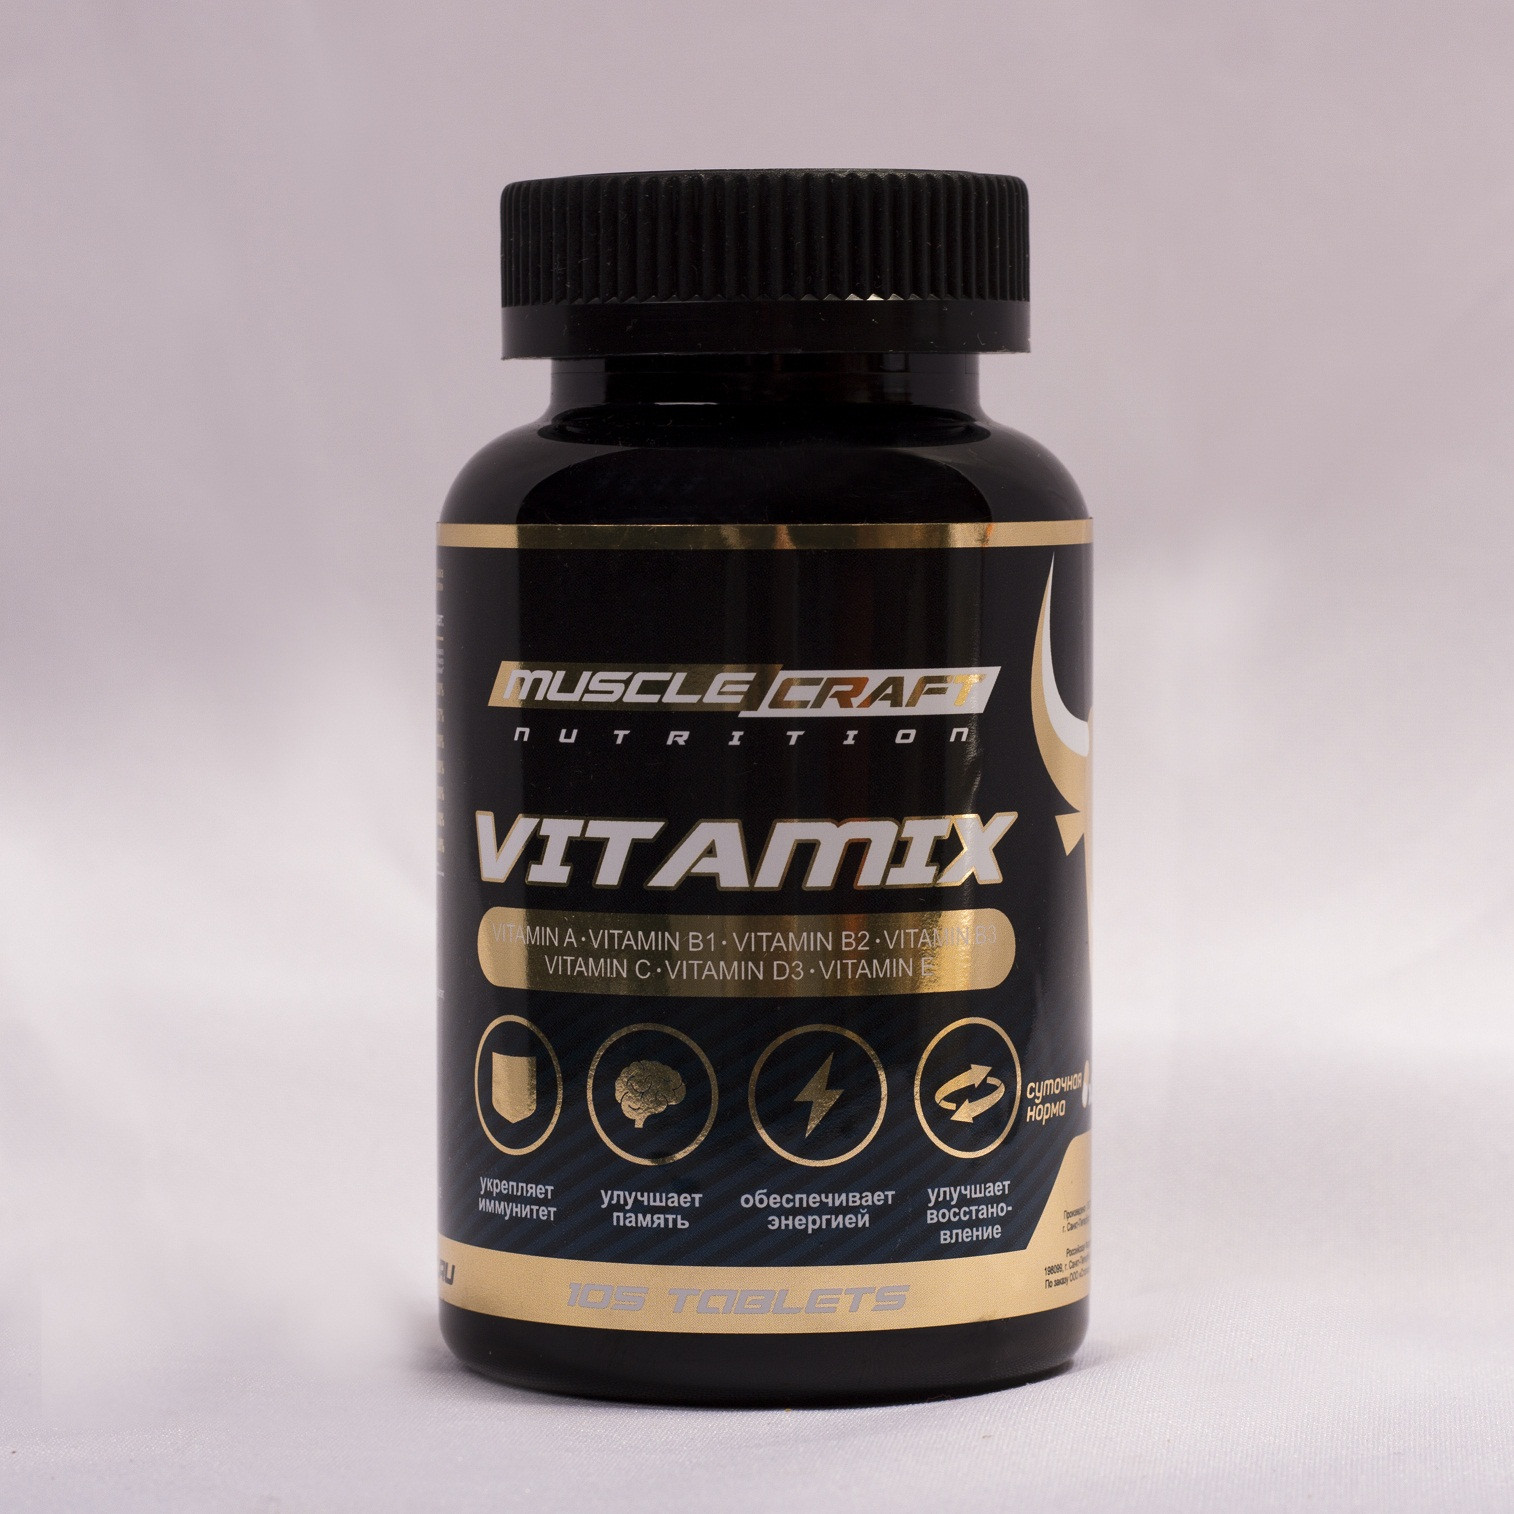 

Витаминный комплекс от musclecraft vitamix